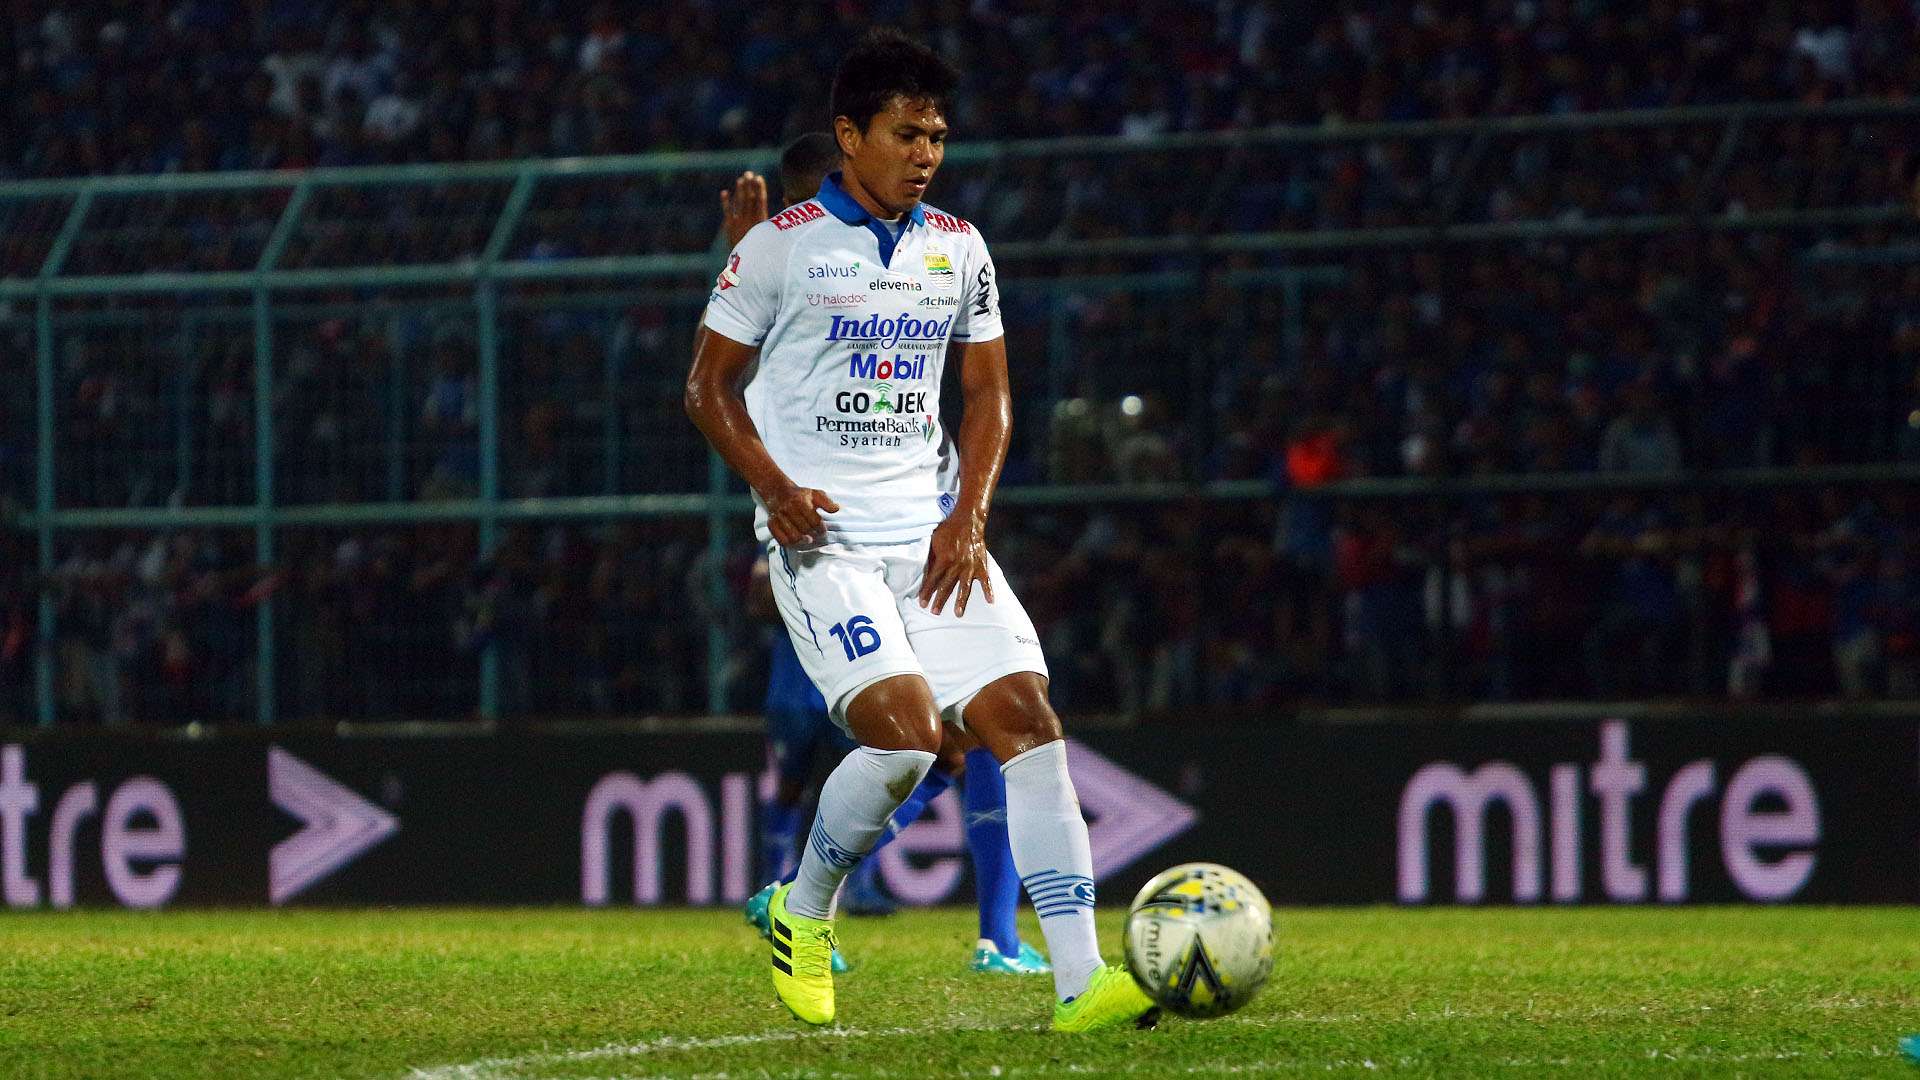 Ahmad Jufriyanto - Persib Bandung